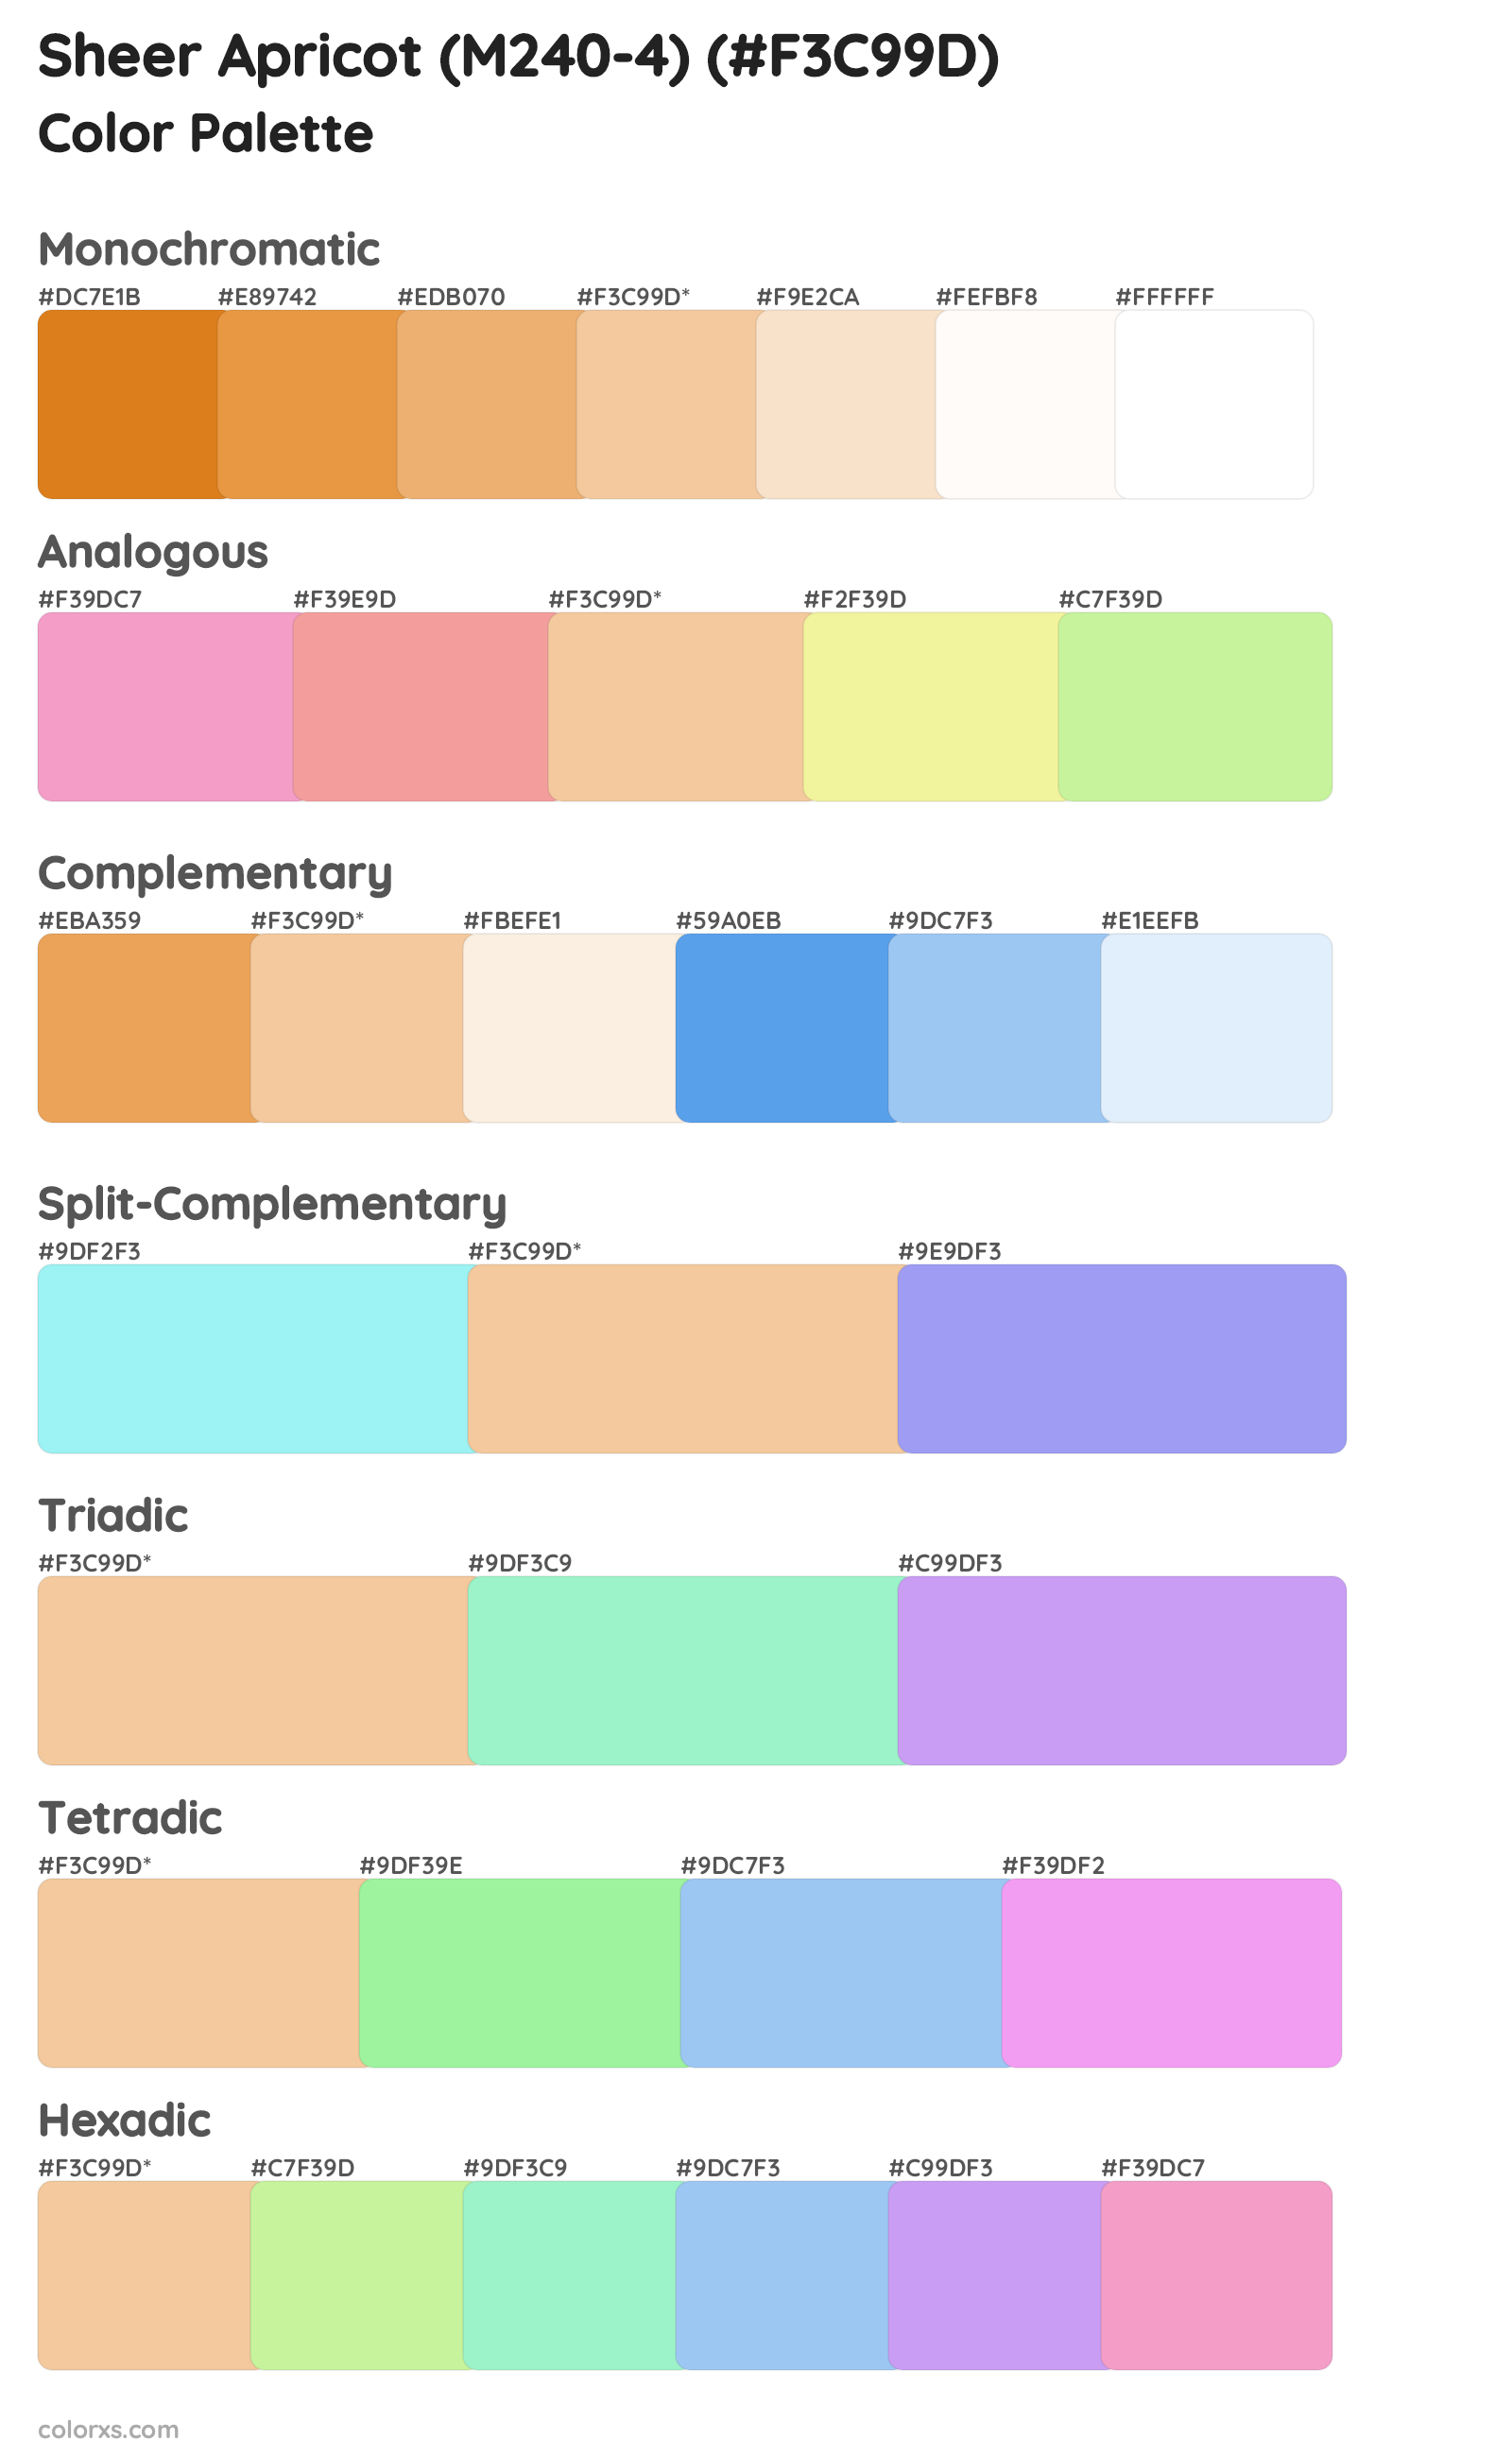 Sheer Apricot (M240-4) Color Scheme Palettes